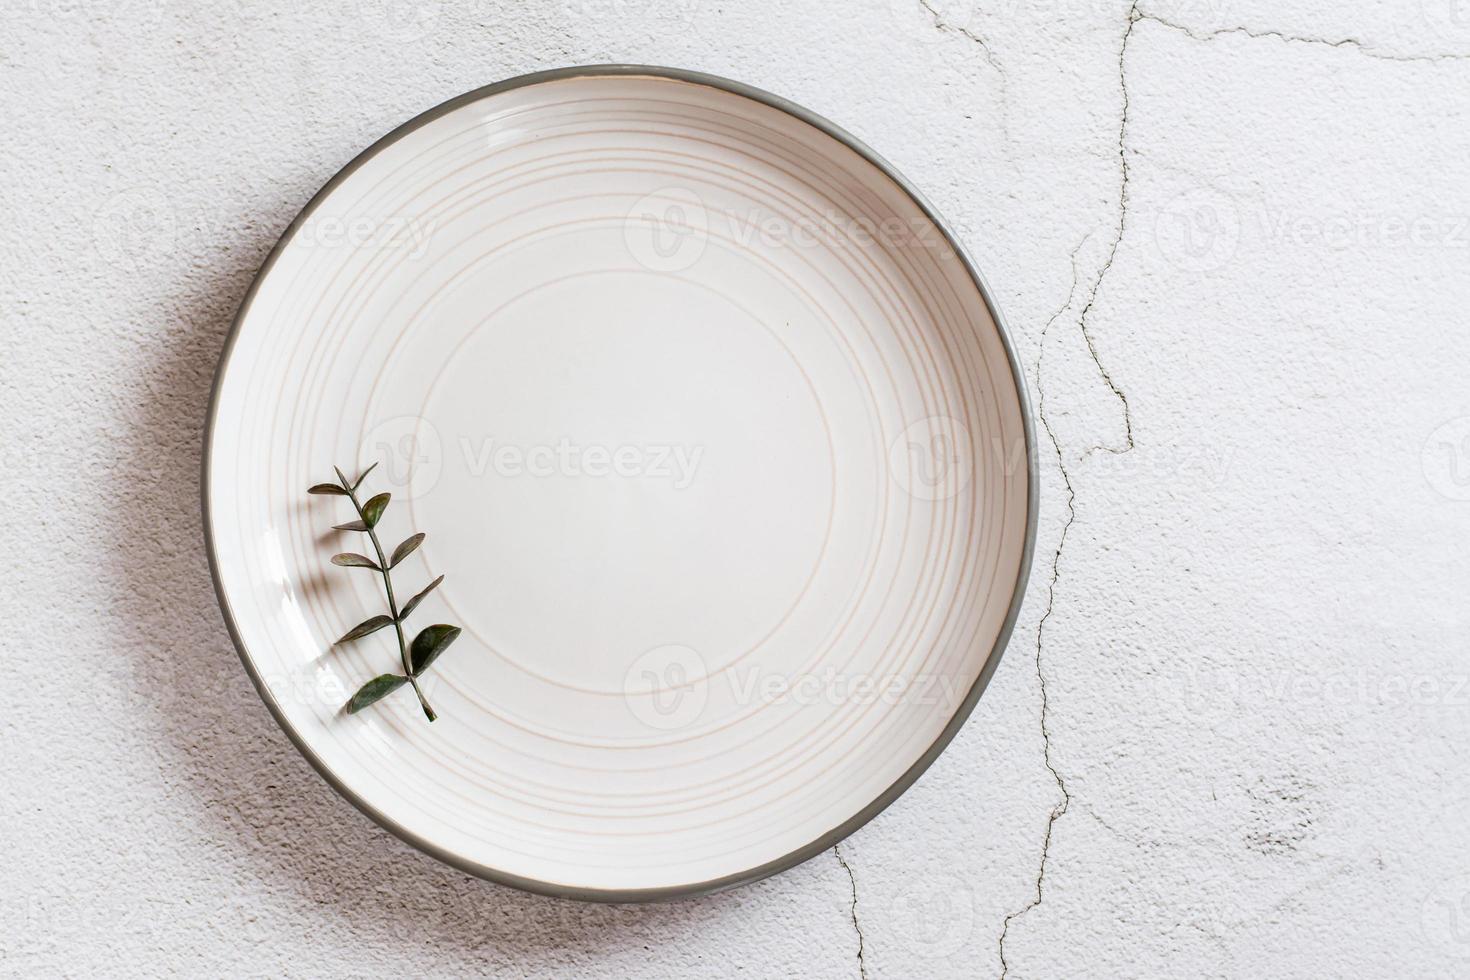 rama de eucalipto en un plato de cerámica vacío sobre un fondo gris. concepto ecológico. vista superior. foto